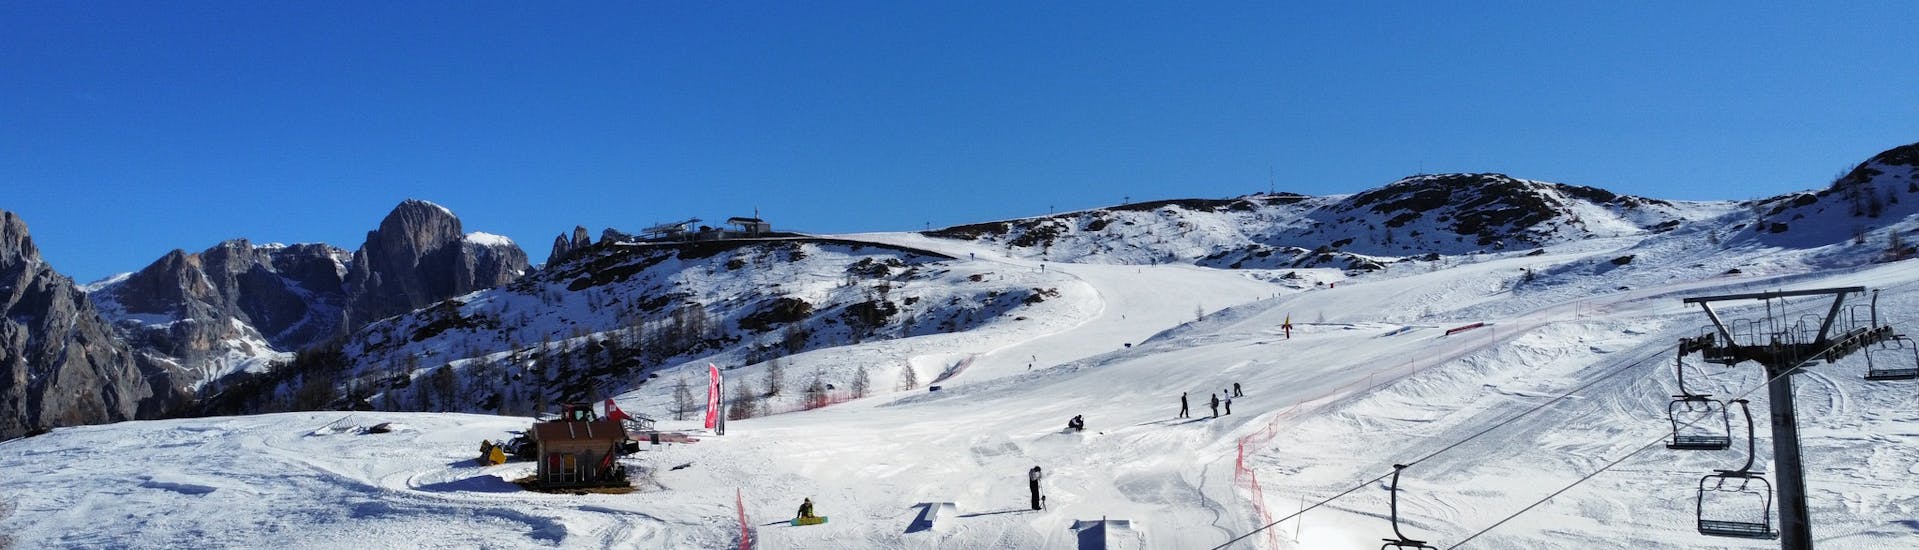 Der Snowpark von San Martino di Castrozza, in dem Rider während des Snowboard-Privatunterrichts für alle Levels mit der Scuola Italiana Sci Dolomiti San Martino di Castrozza neue Tricks ausprobieren können.